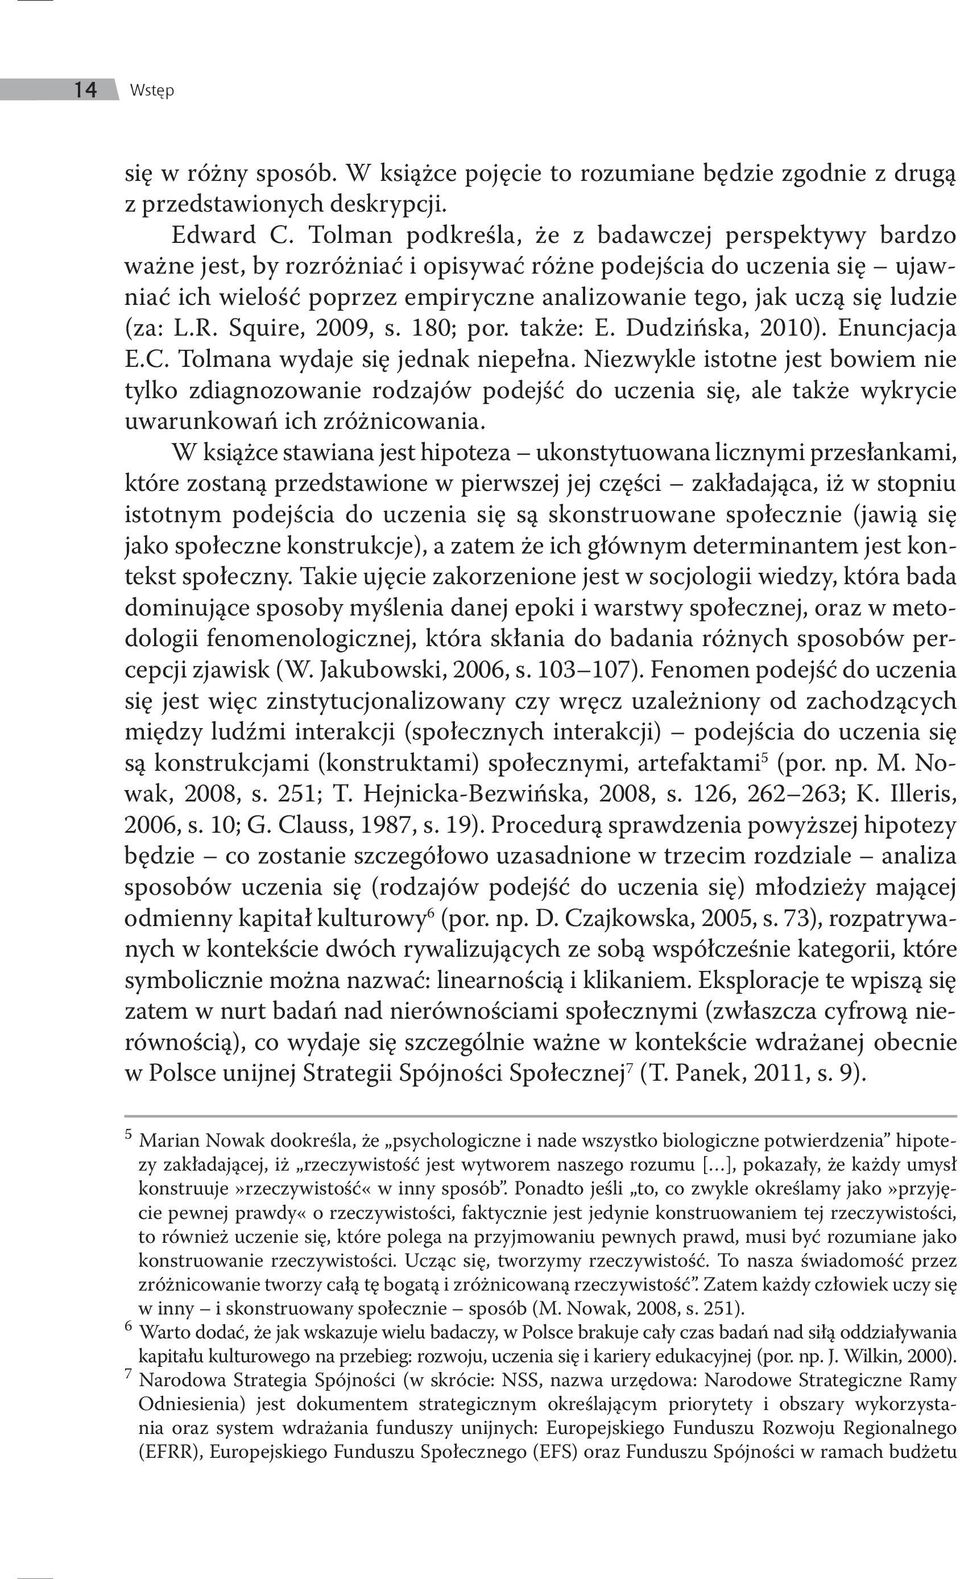 (za: L.R. Squire, 2009, s. 180; por. także: E. Dudzińska, 2010). Enuncjacja E.C. Tolmana wydaje się jednak niepełna.